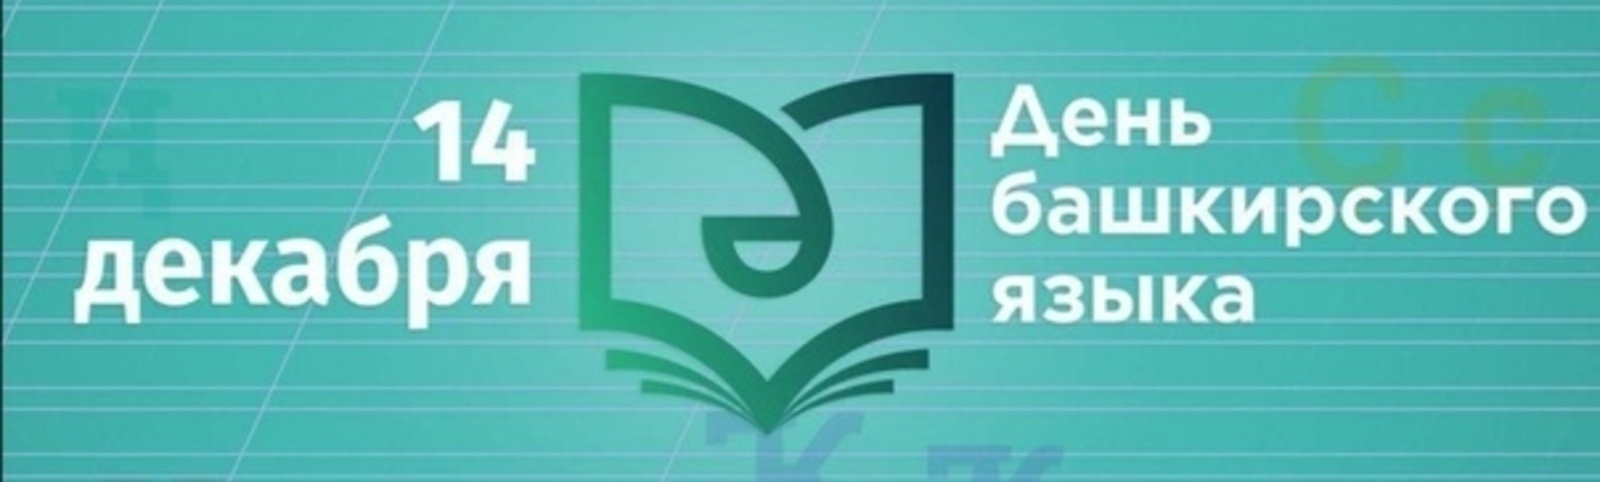 14 декабря в Башкортостане масштабно отметят День башкирского языка